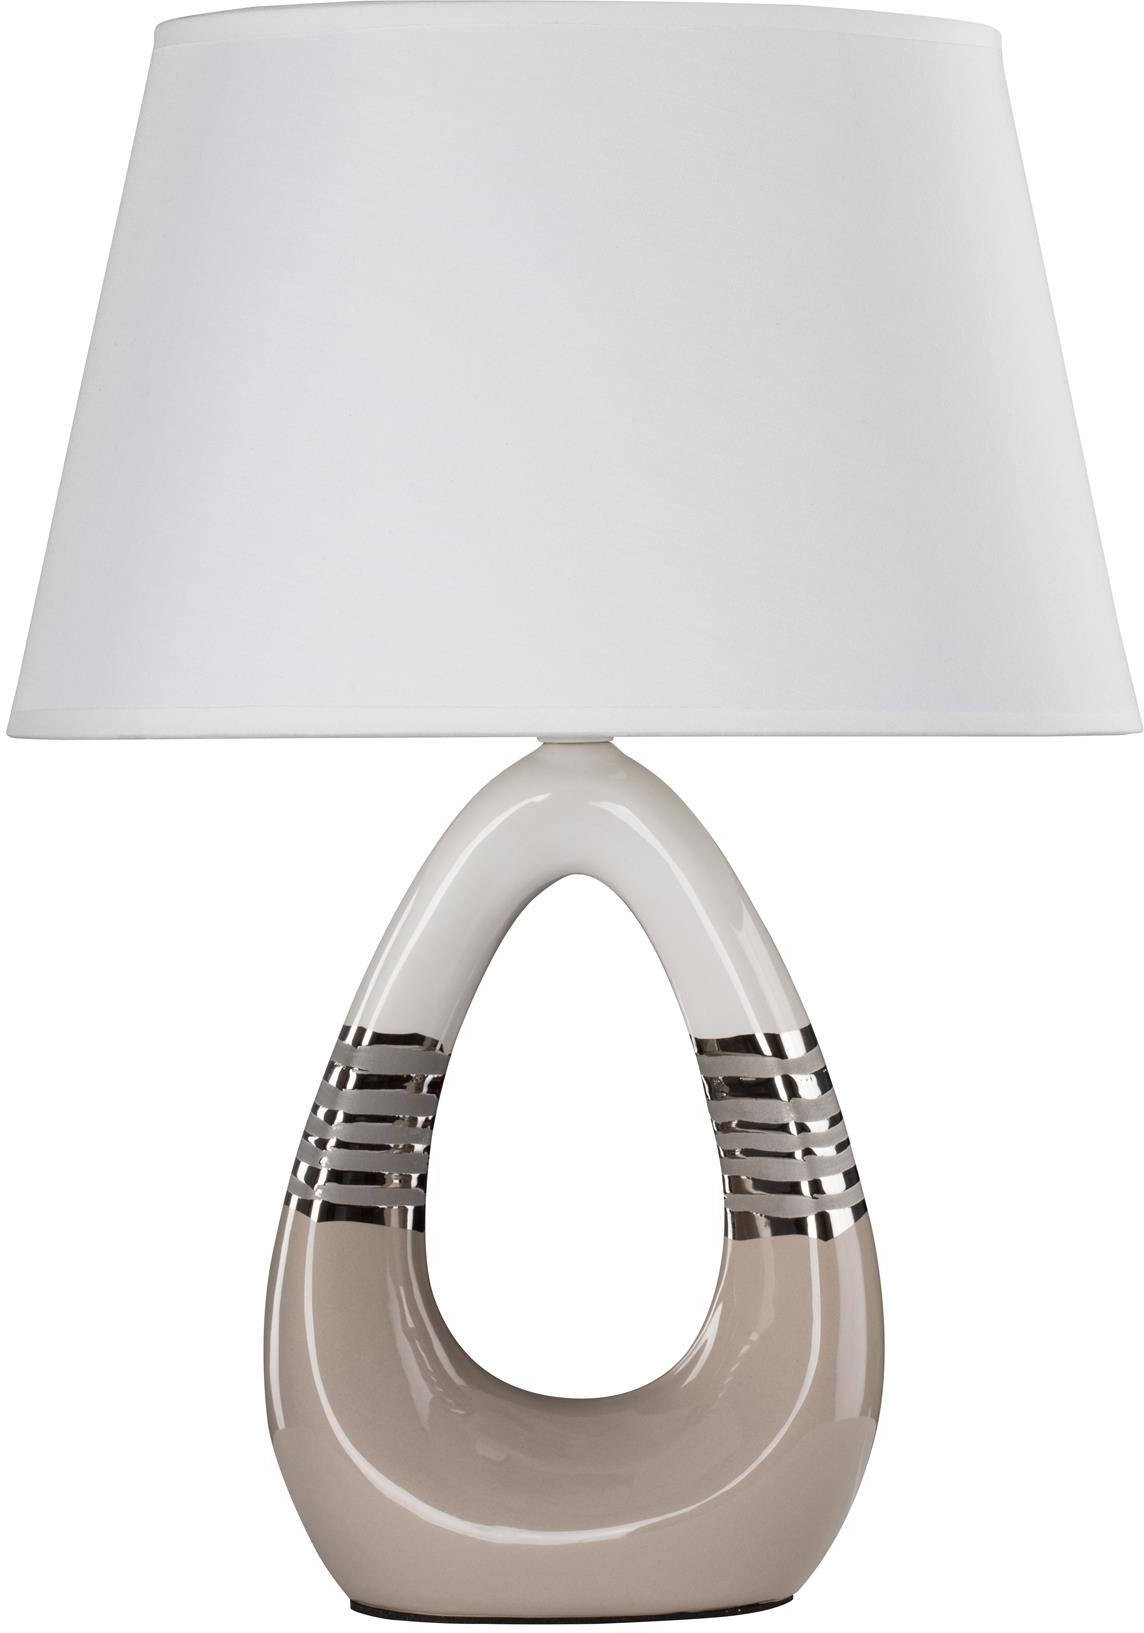 Candellux Lampa gabinetowa beżowo-biała ceramiczna Romano 41-79954 41-79954